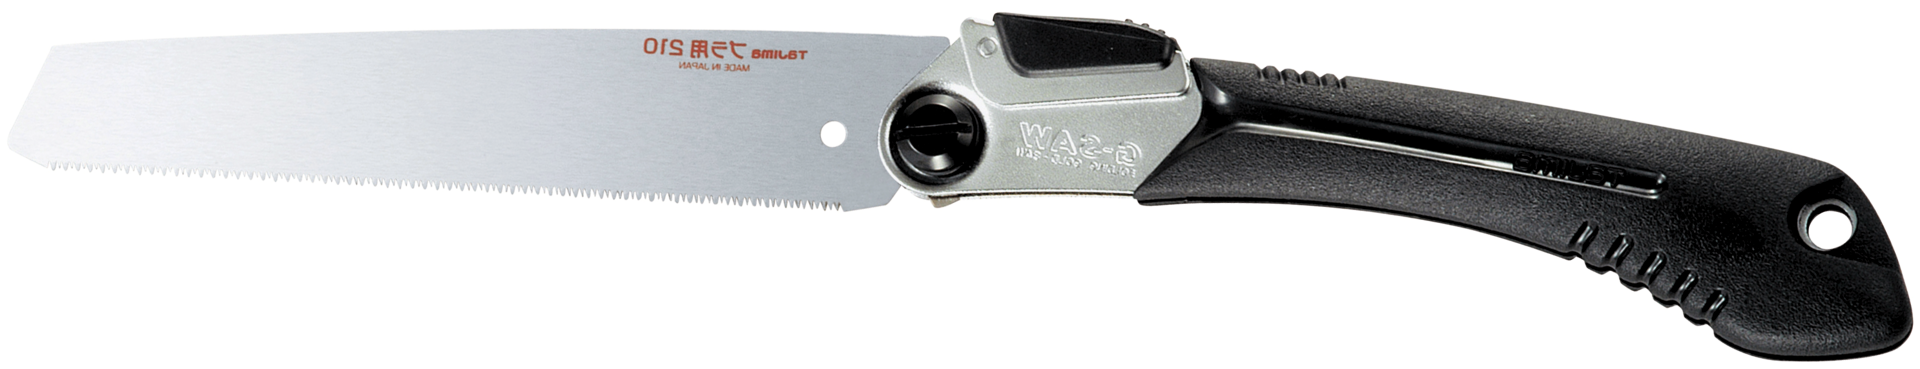 Handsäge klappbar mit Schnellschnitt-Sägeblatt L210mm